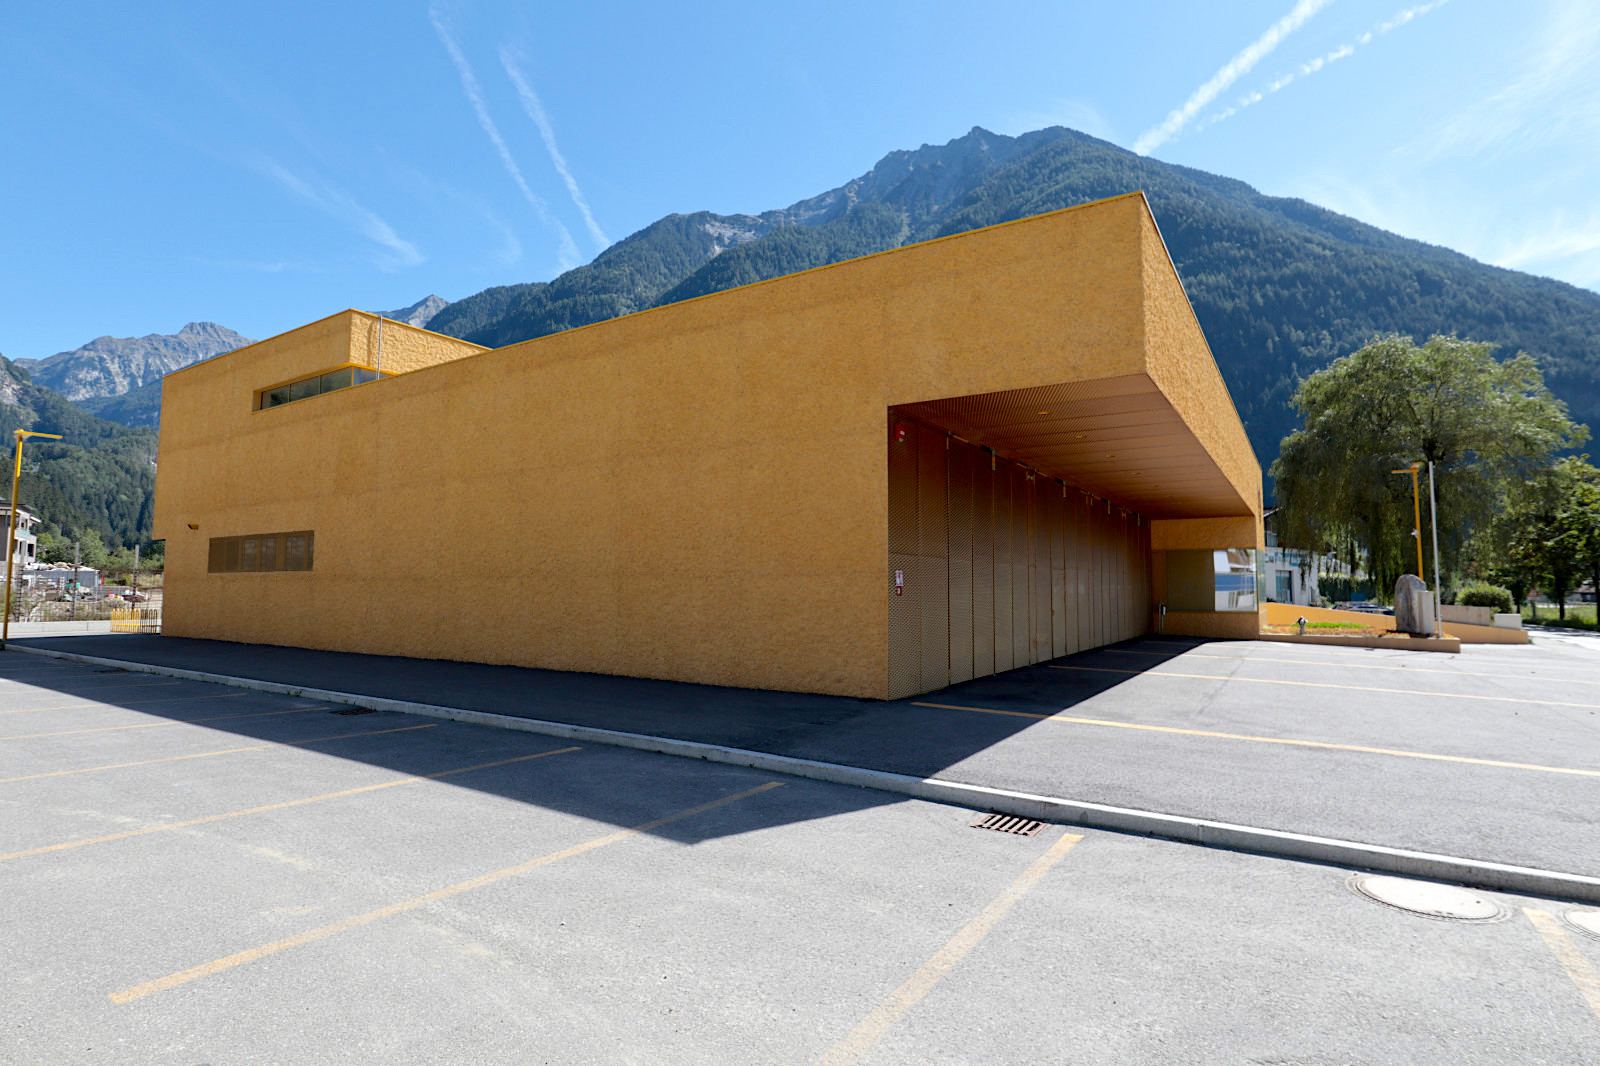 Mit Hymer zur alpinen Baukunst in Südtirol, Teil 1 – Roadtrip zur Gipfelarchitektur [Südtirol]